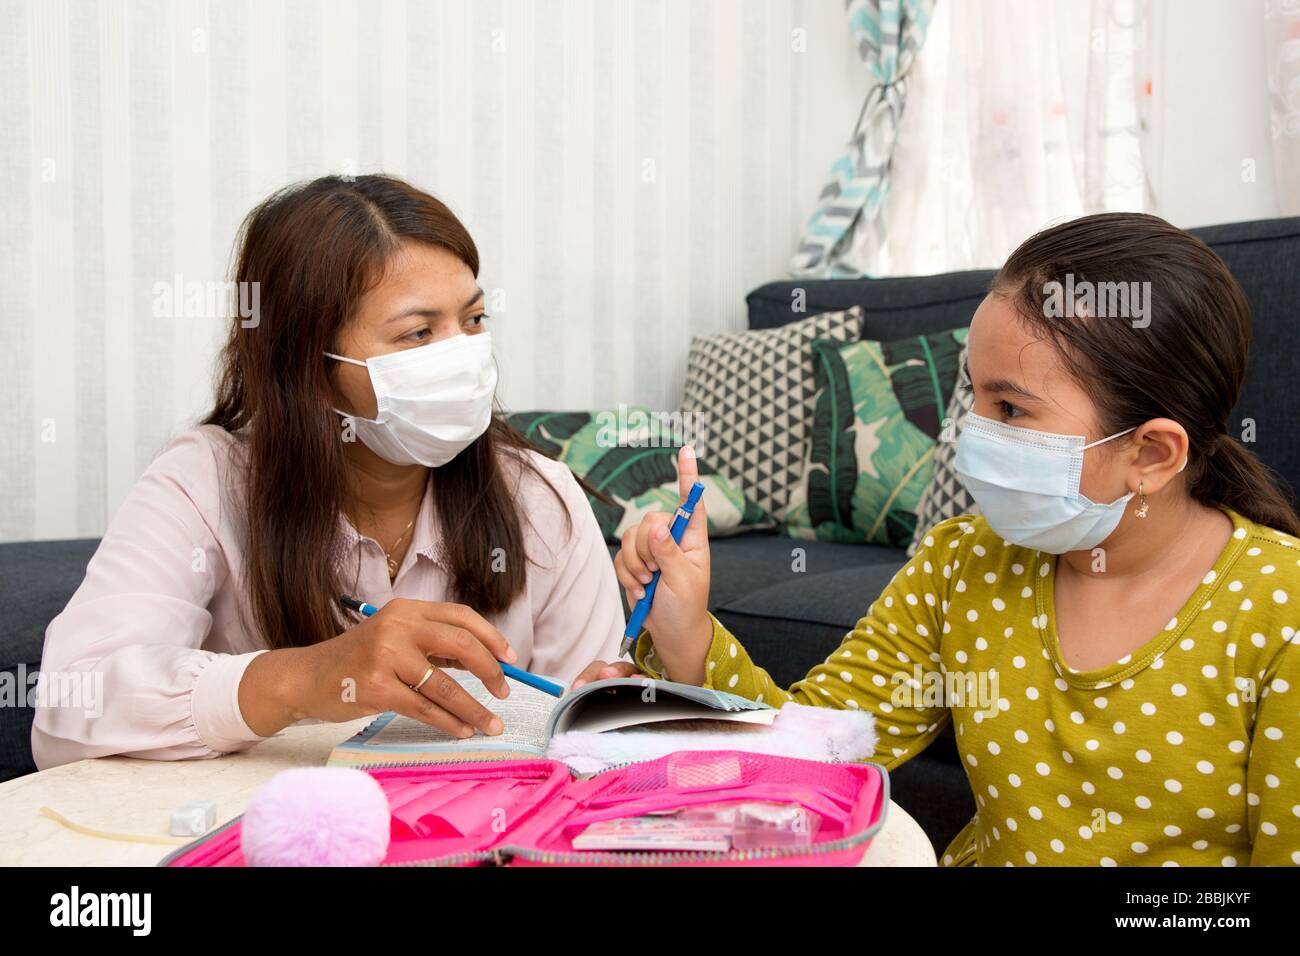 Accueil école concept image avec la mère et la fille étudier en portant des masques de visage en raison de la menace actuelle du virus corona - soins de santé actuels / Banque D'Images